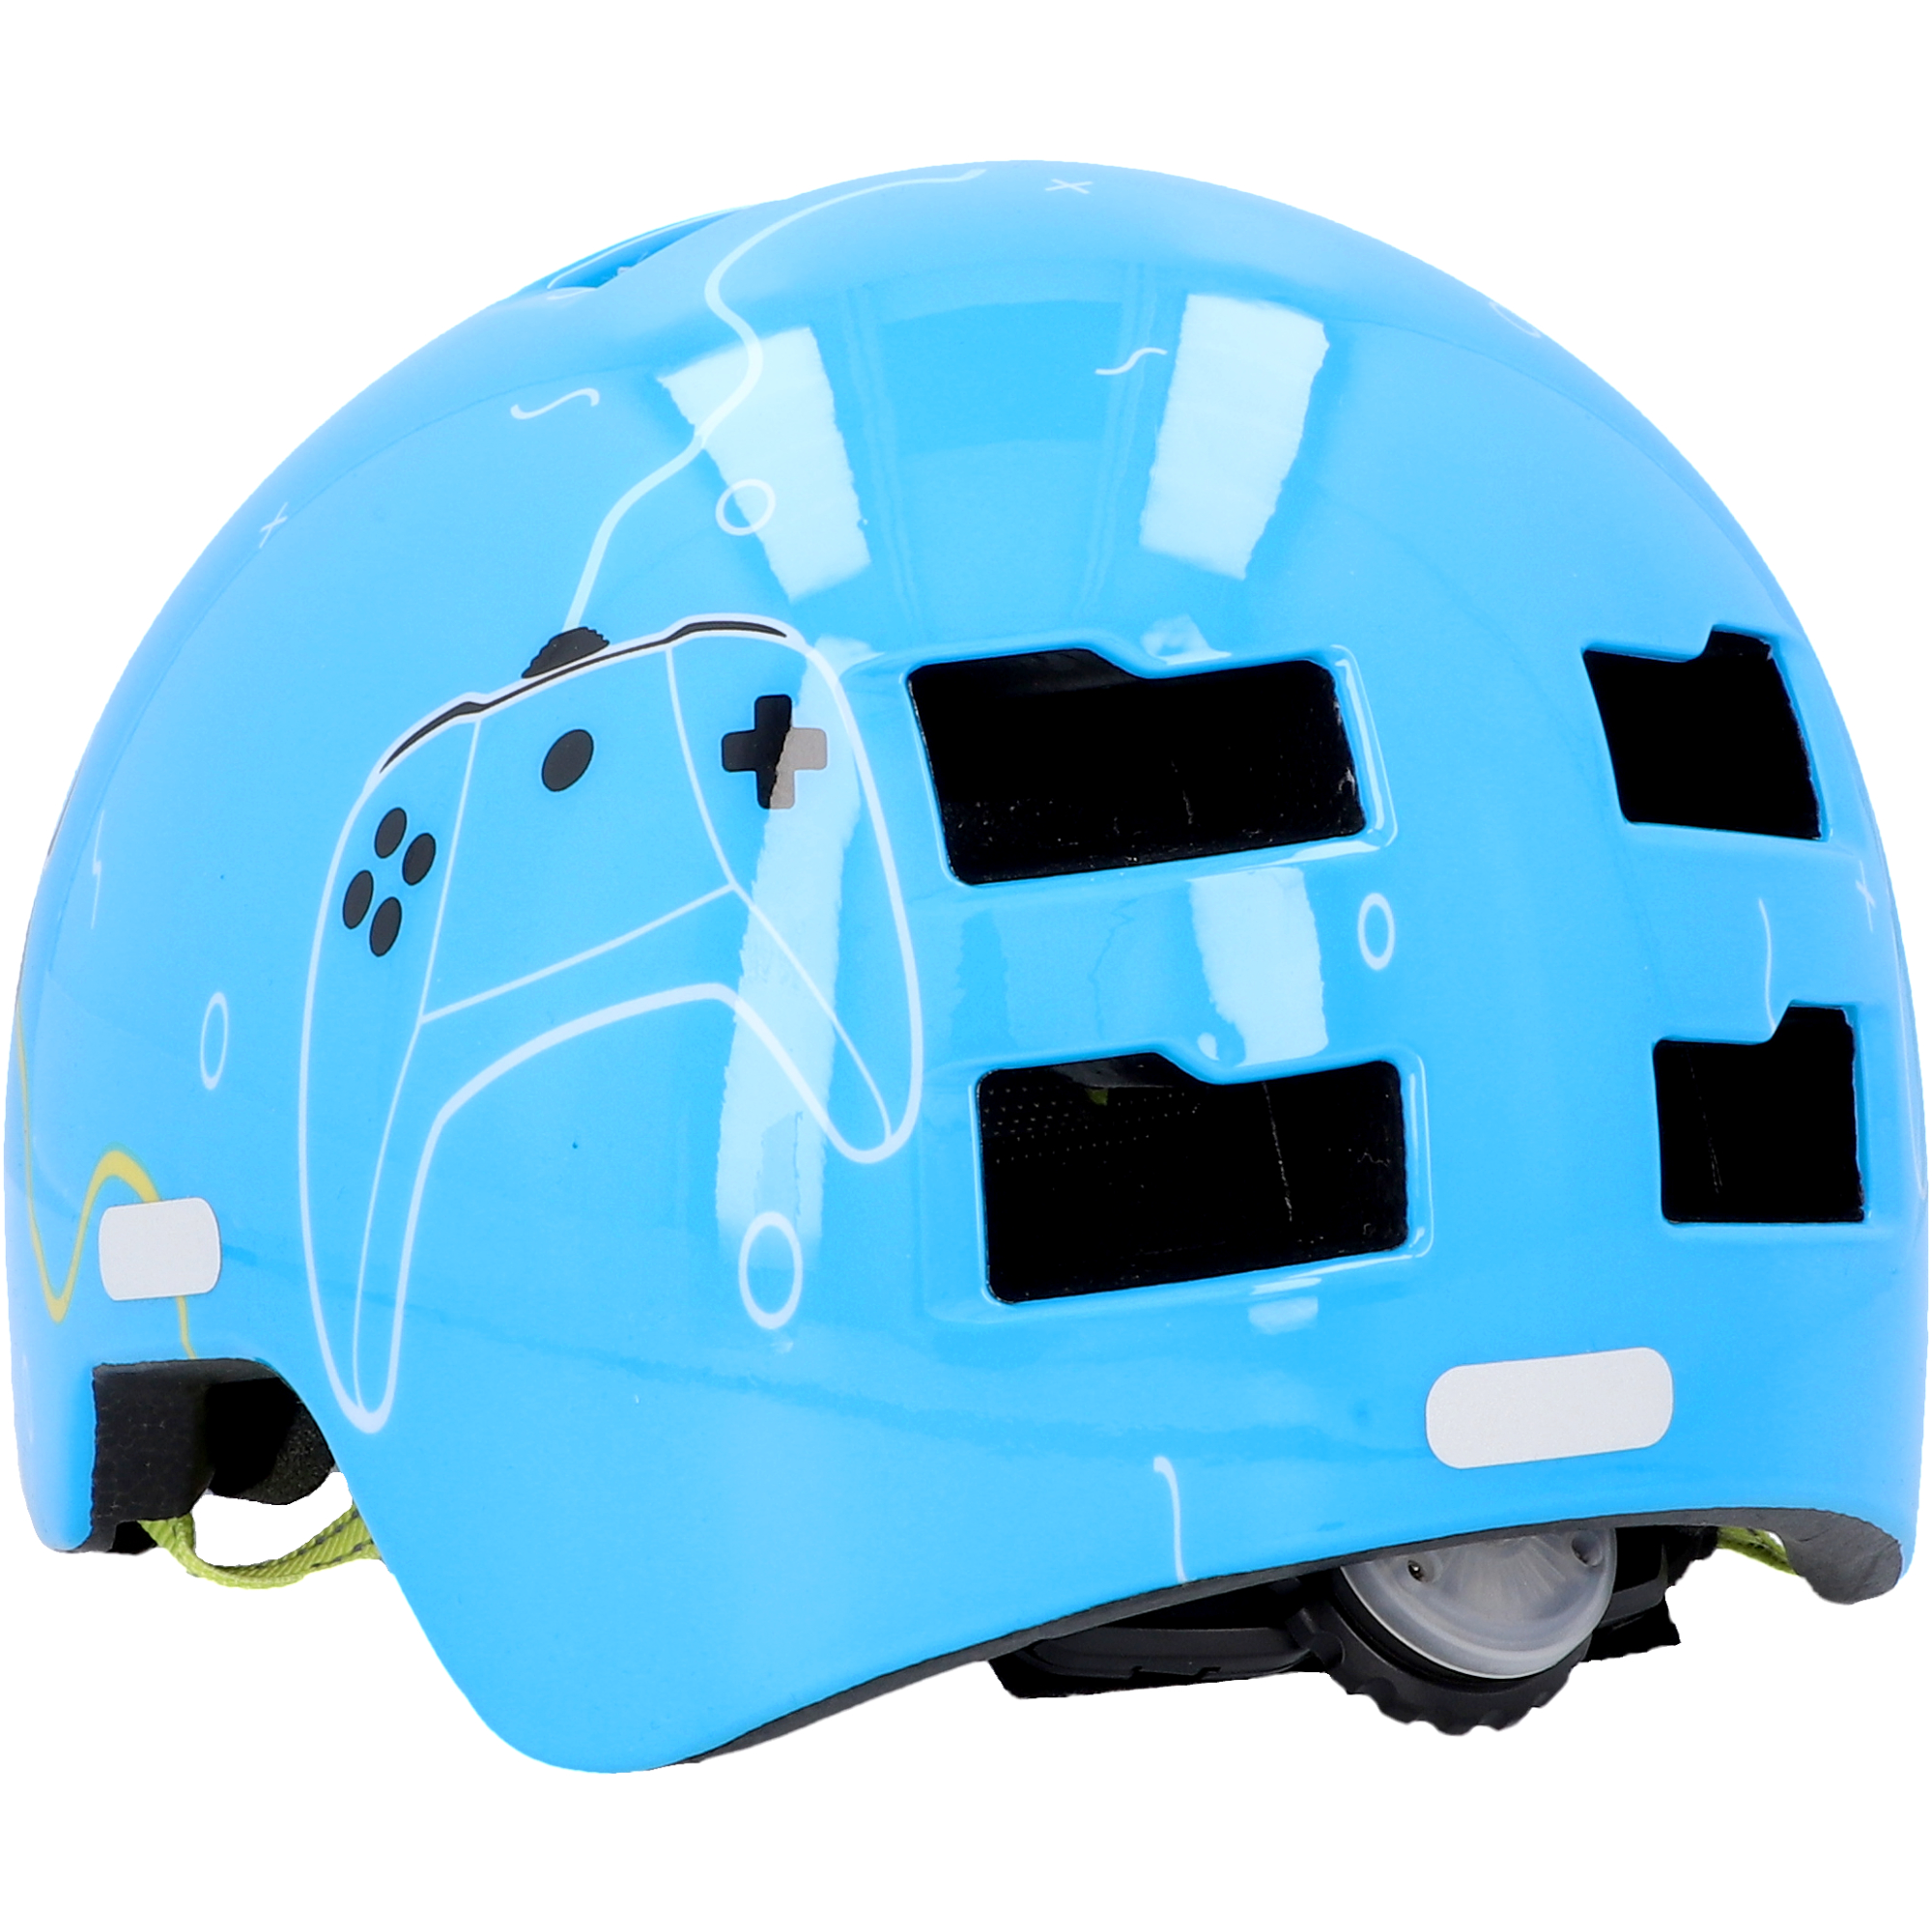 Fahrradhelm 'BMX Kinder Plus Game' blau XS/S + product picture